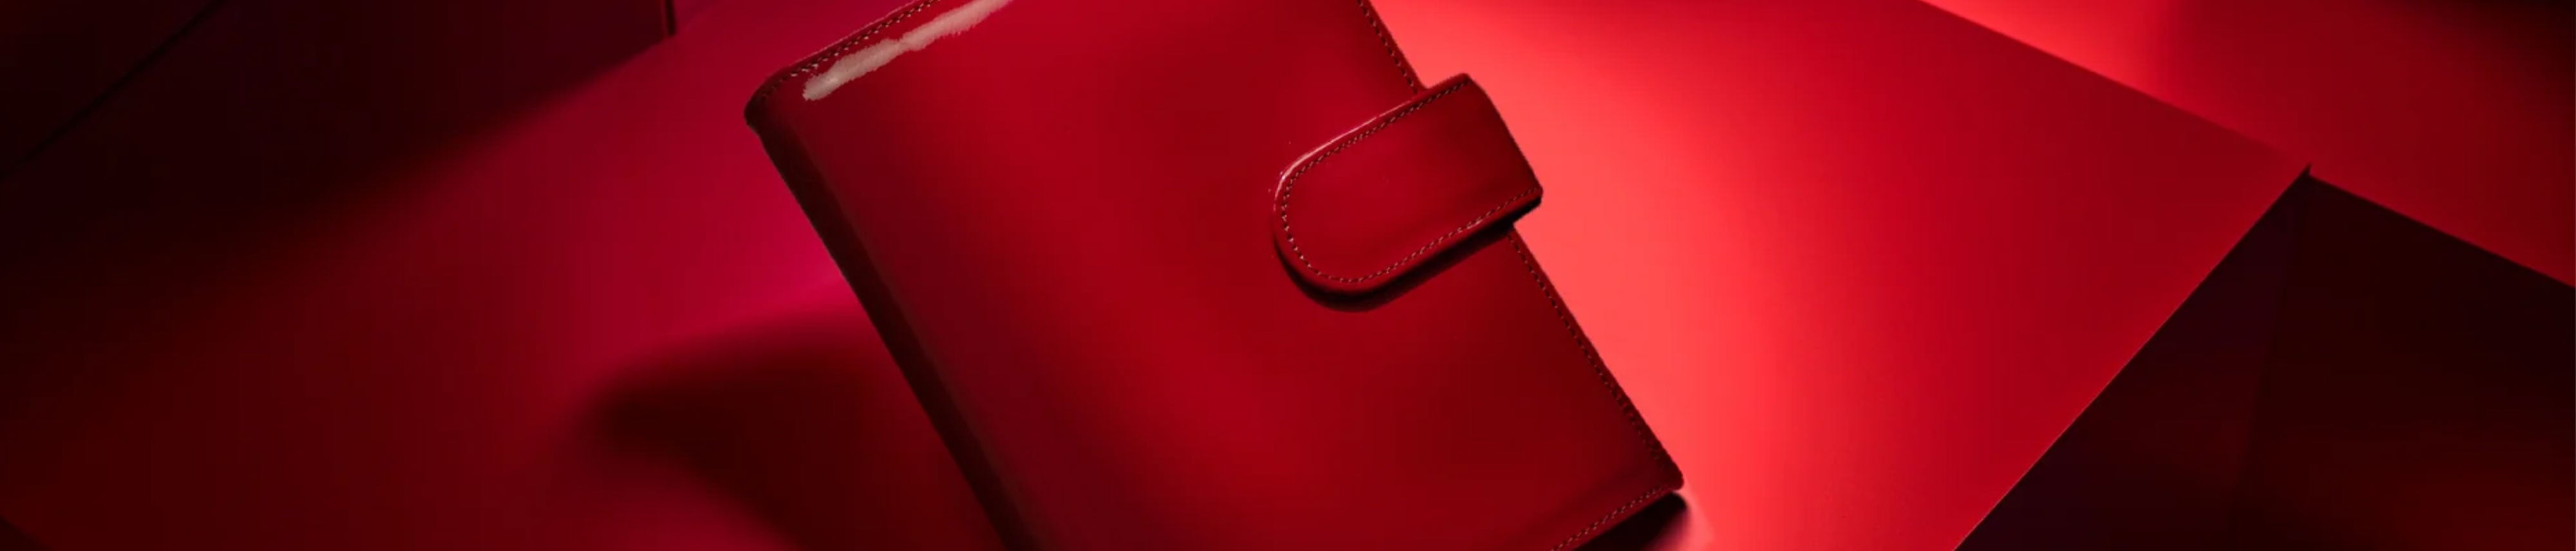 Detailauschnitt eines Bildes von einem roten Lackleder-Ringbuch in roter Umgebung.